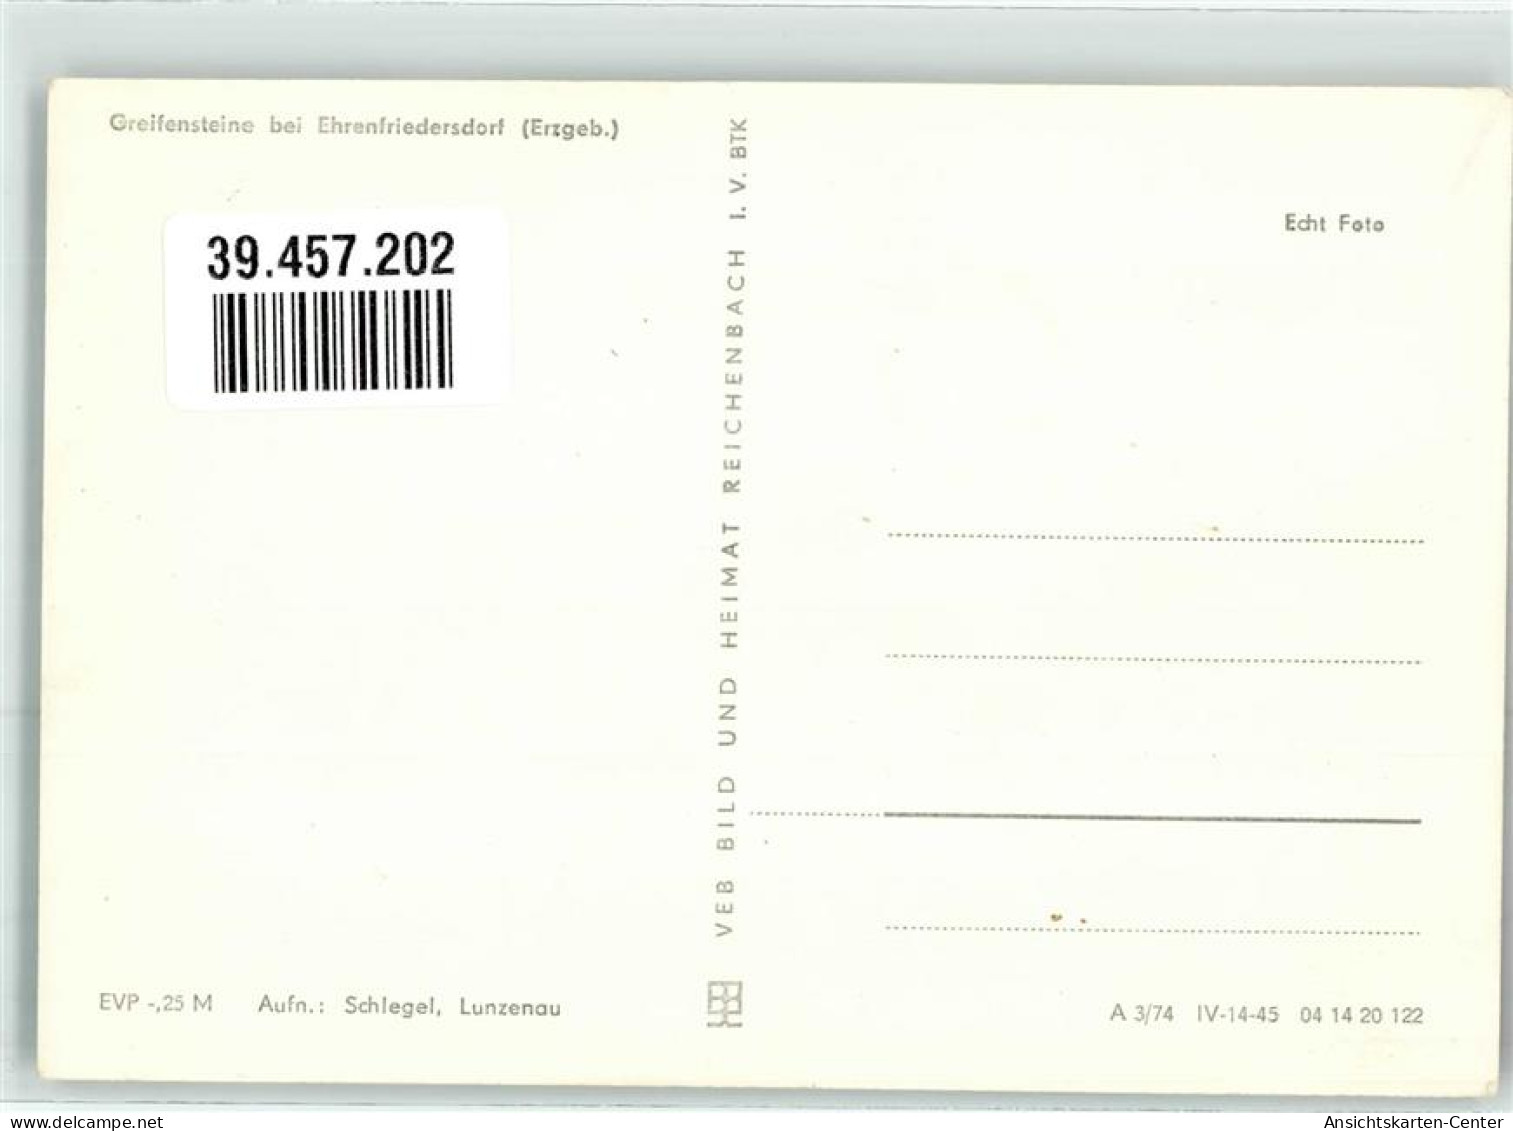 39457202 - Ehrenfriedersdorf - Ehrenfriedersdorf